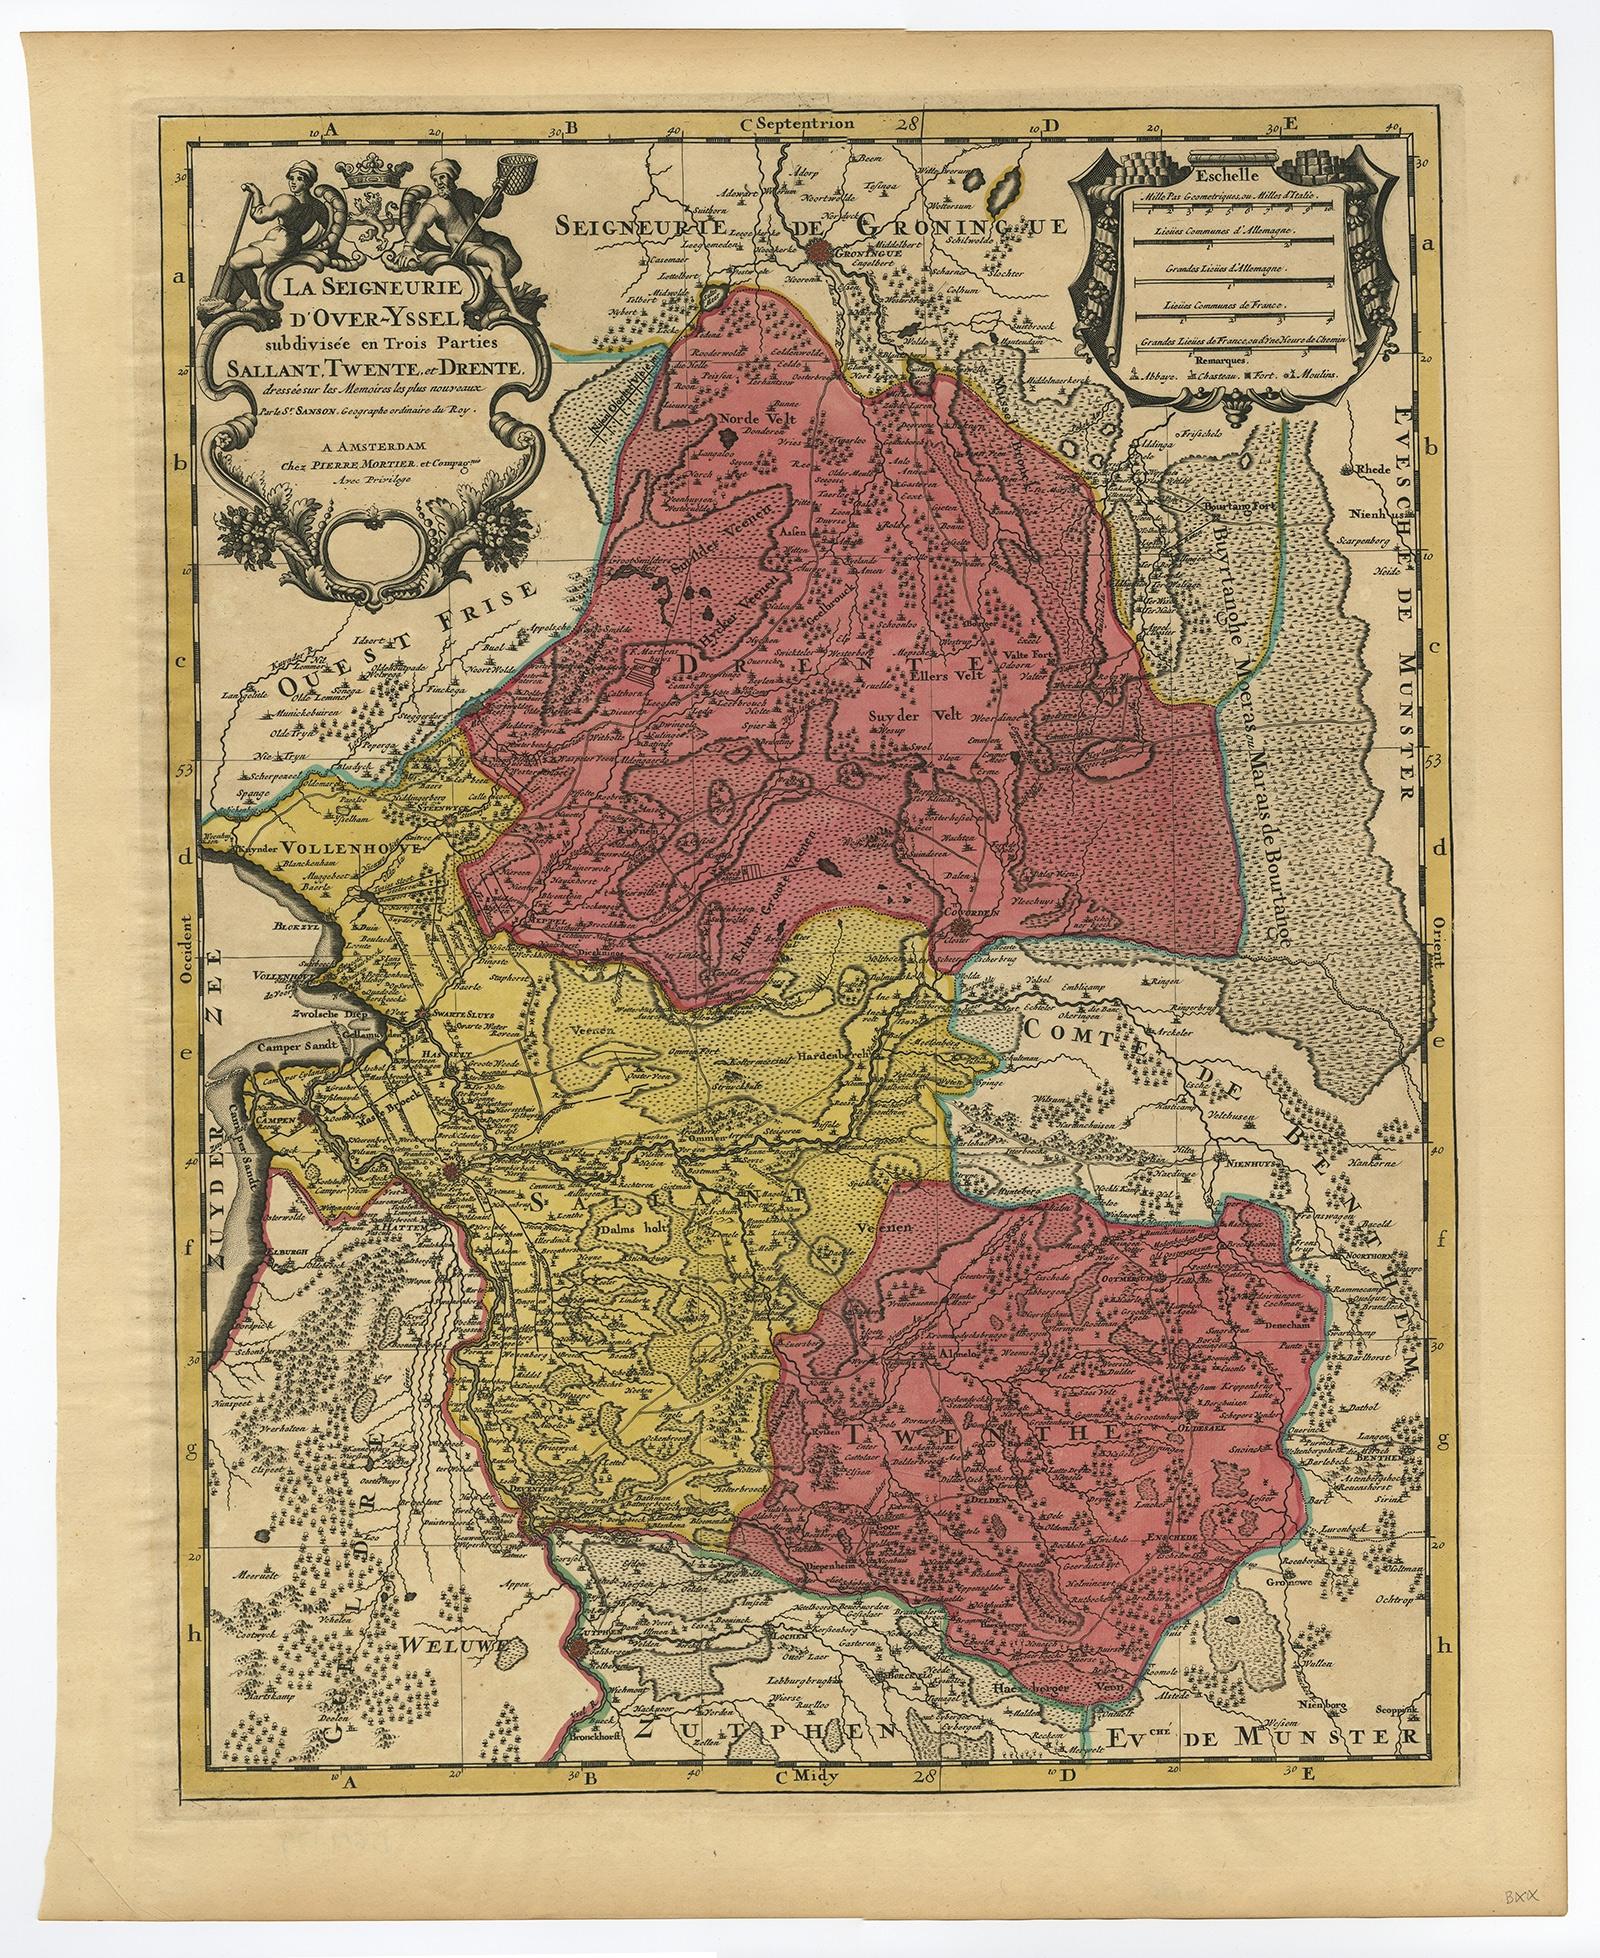 Antike Karte mit dem Titel 'La Seigneurie d'Over-Yssel subdivisee en Trois Parties, Sallant, Twente, et Drente' 

Detaillierte Karte der Provinz Overijssel in den Niederlanden. Aus Jaillot's 